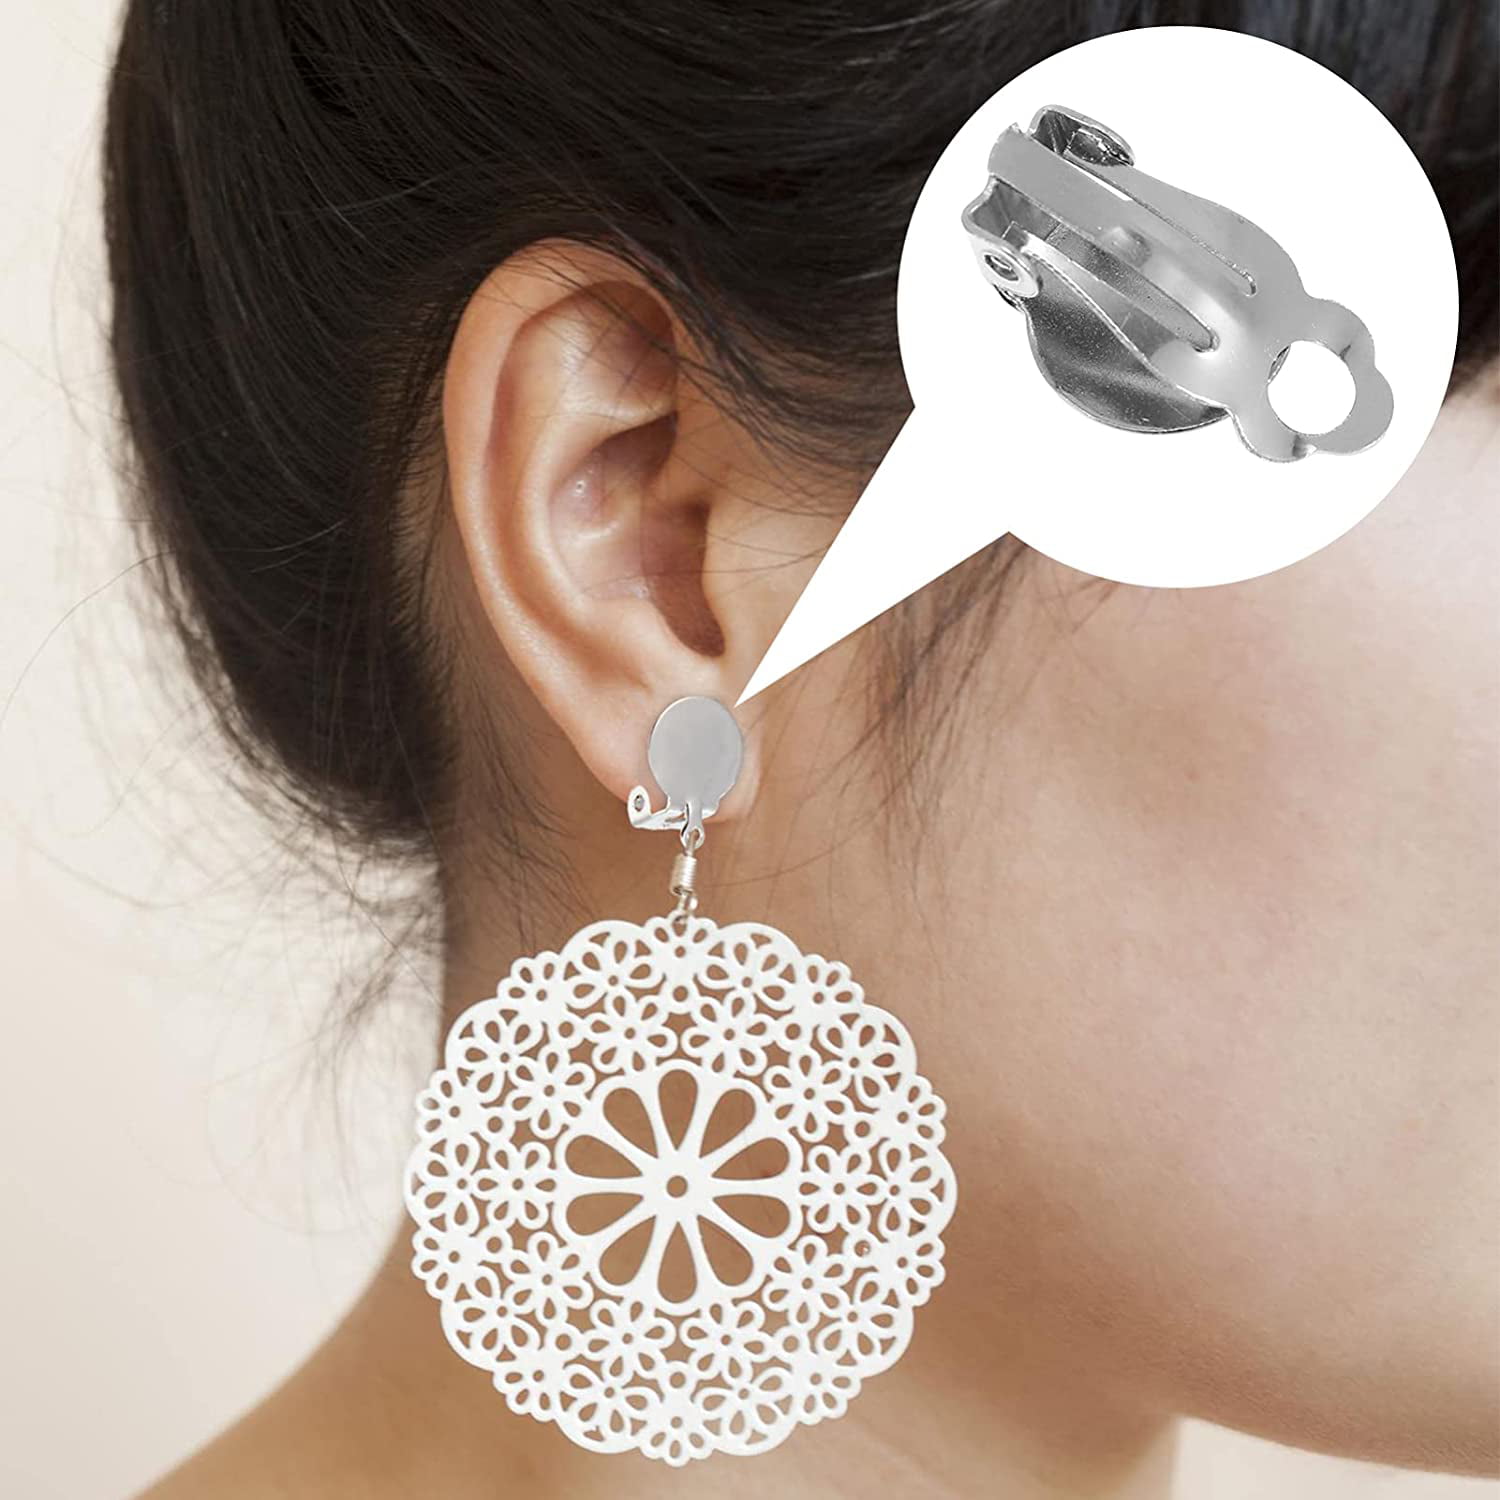 SEWACC 48 Pcs Ear Clip Adapter Earrings Backs for Studs Pierced Earring  Backs Earring Triangle Trays DIY Piercings Jewelry Ear Clip Base Decor  Copper